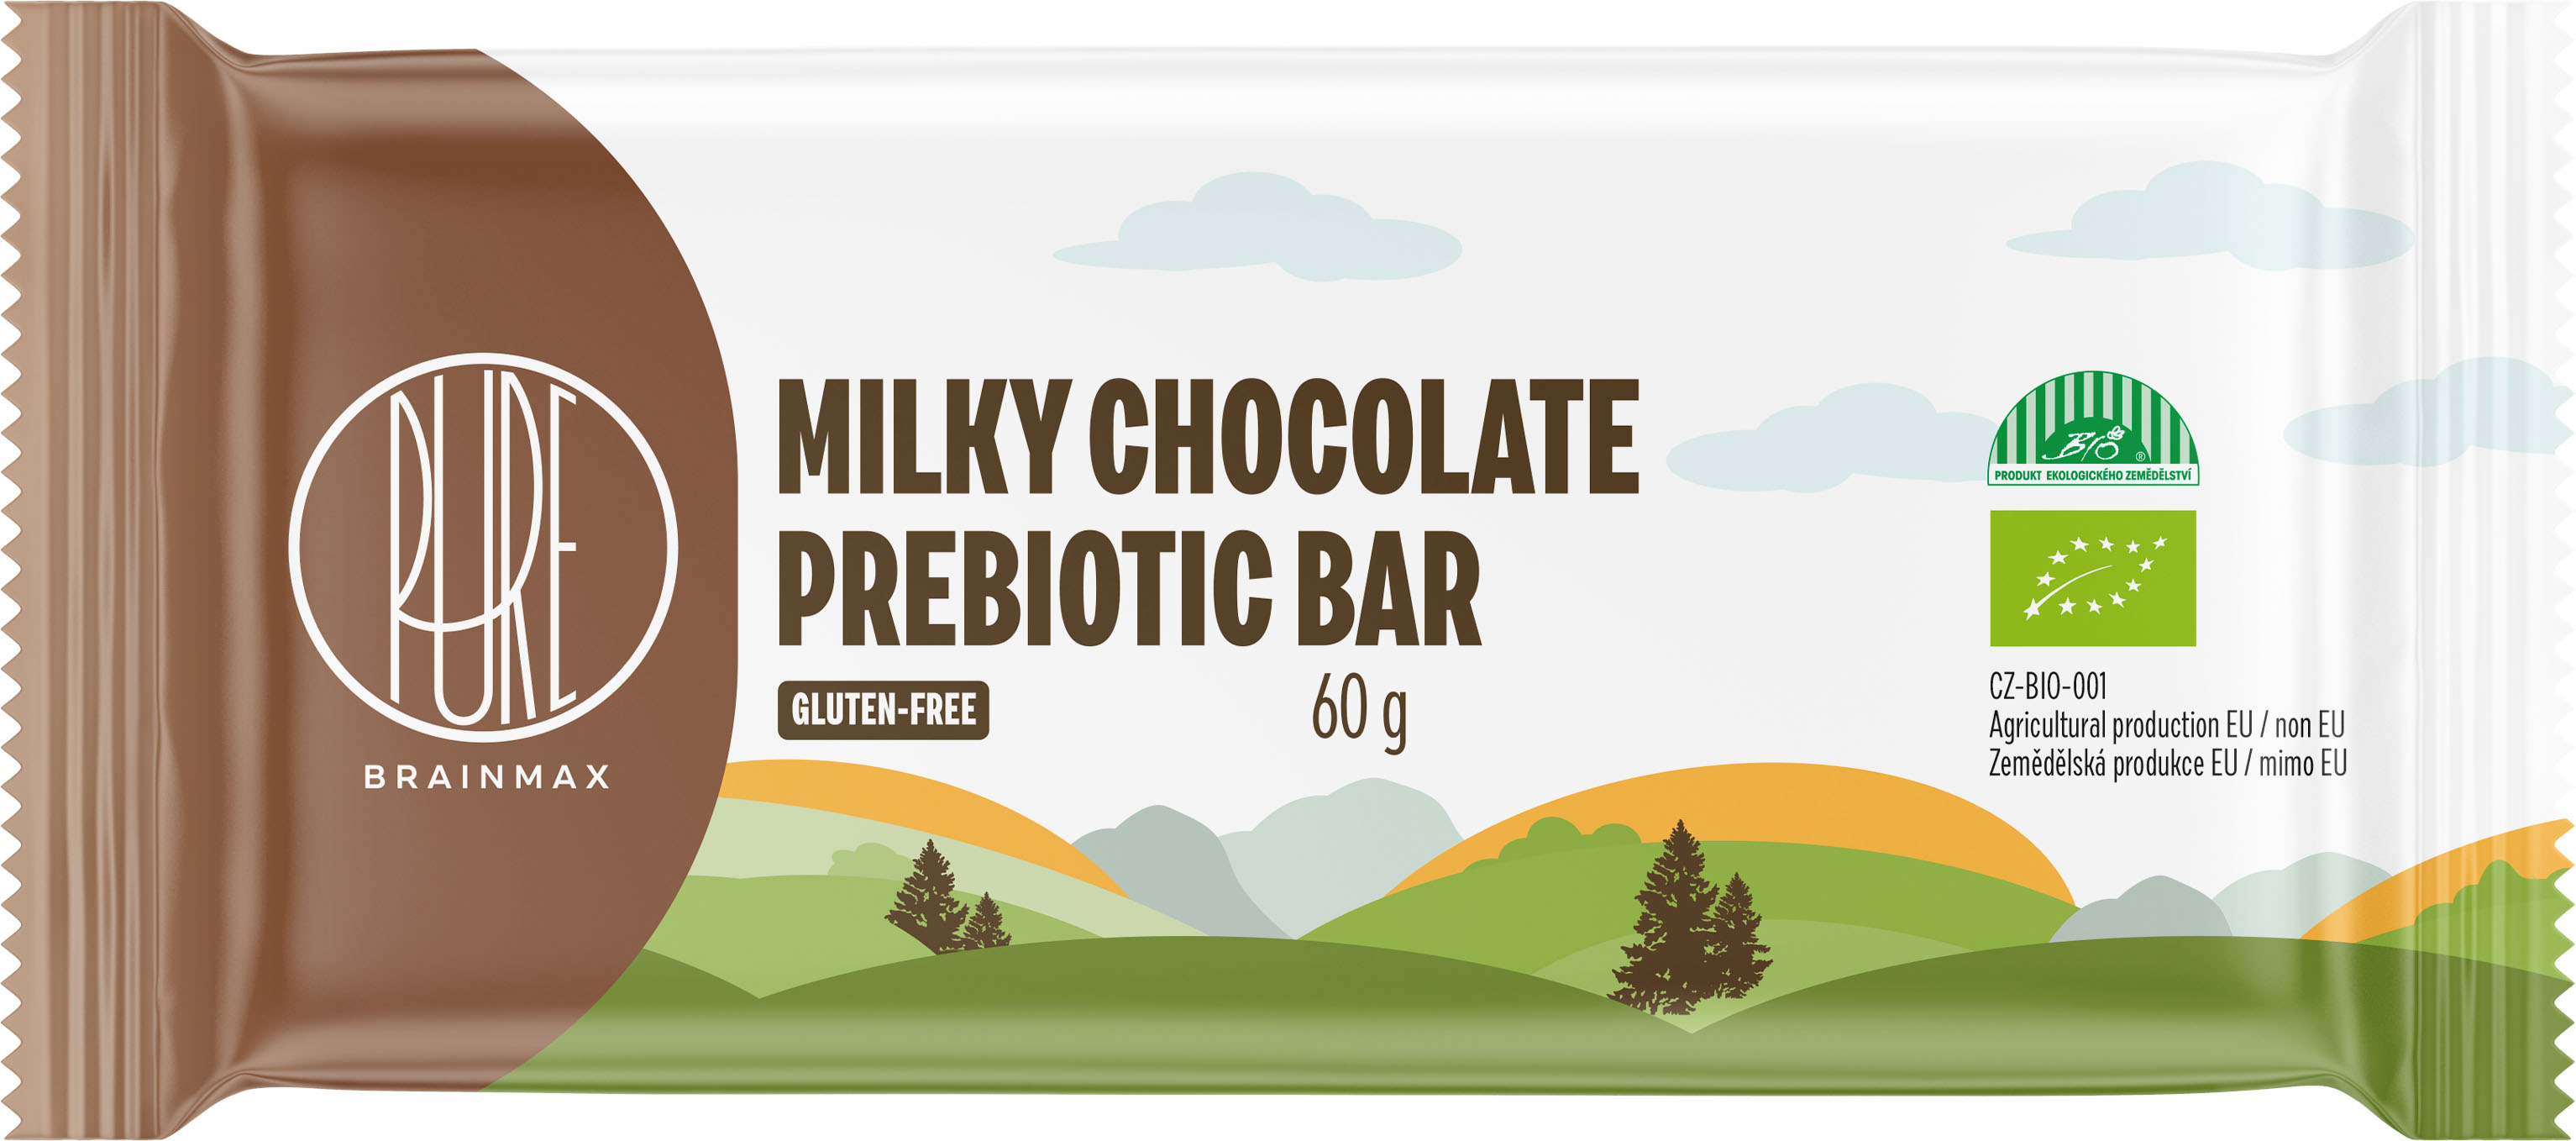 BrainMax Pure Milky Chocolate Prebiotic Bar, Prebiotická tyčinka, Mléčná čokoláda, BIO, 60 g *CZ-BIO-001 certifikát / tyčinka s vlákninou, lískooříškovým krémem a mléčnou čokoládou